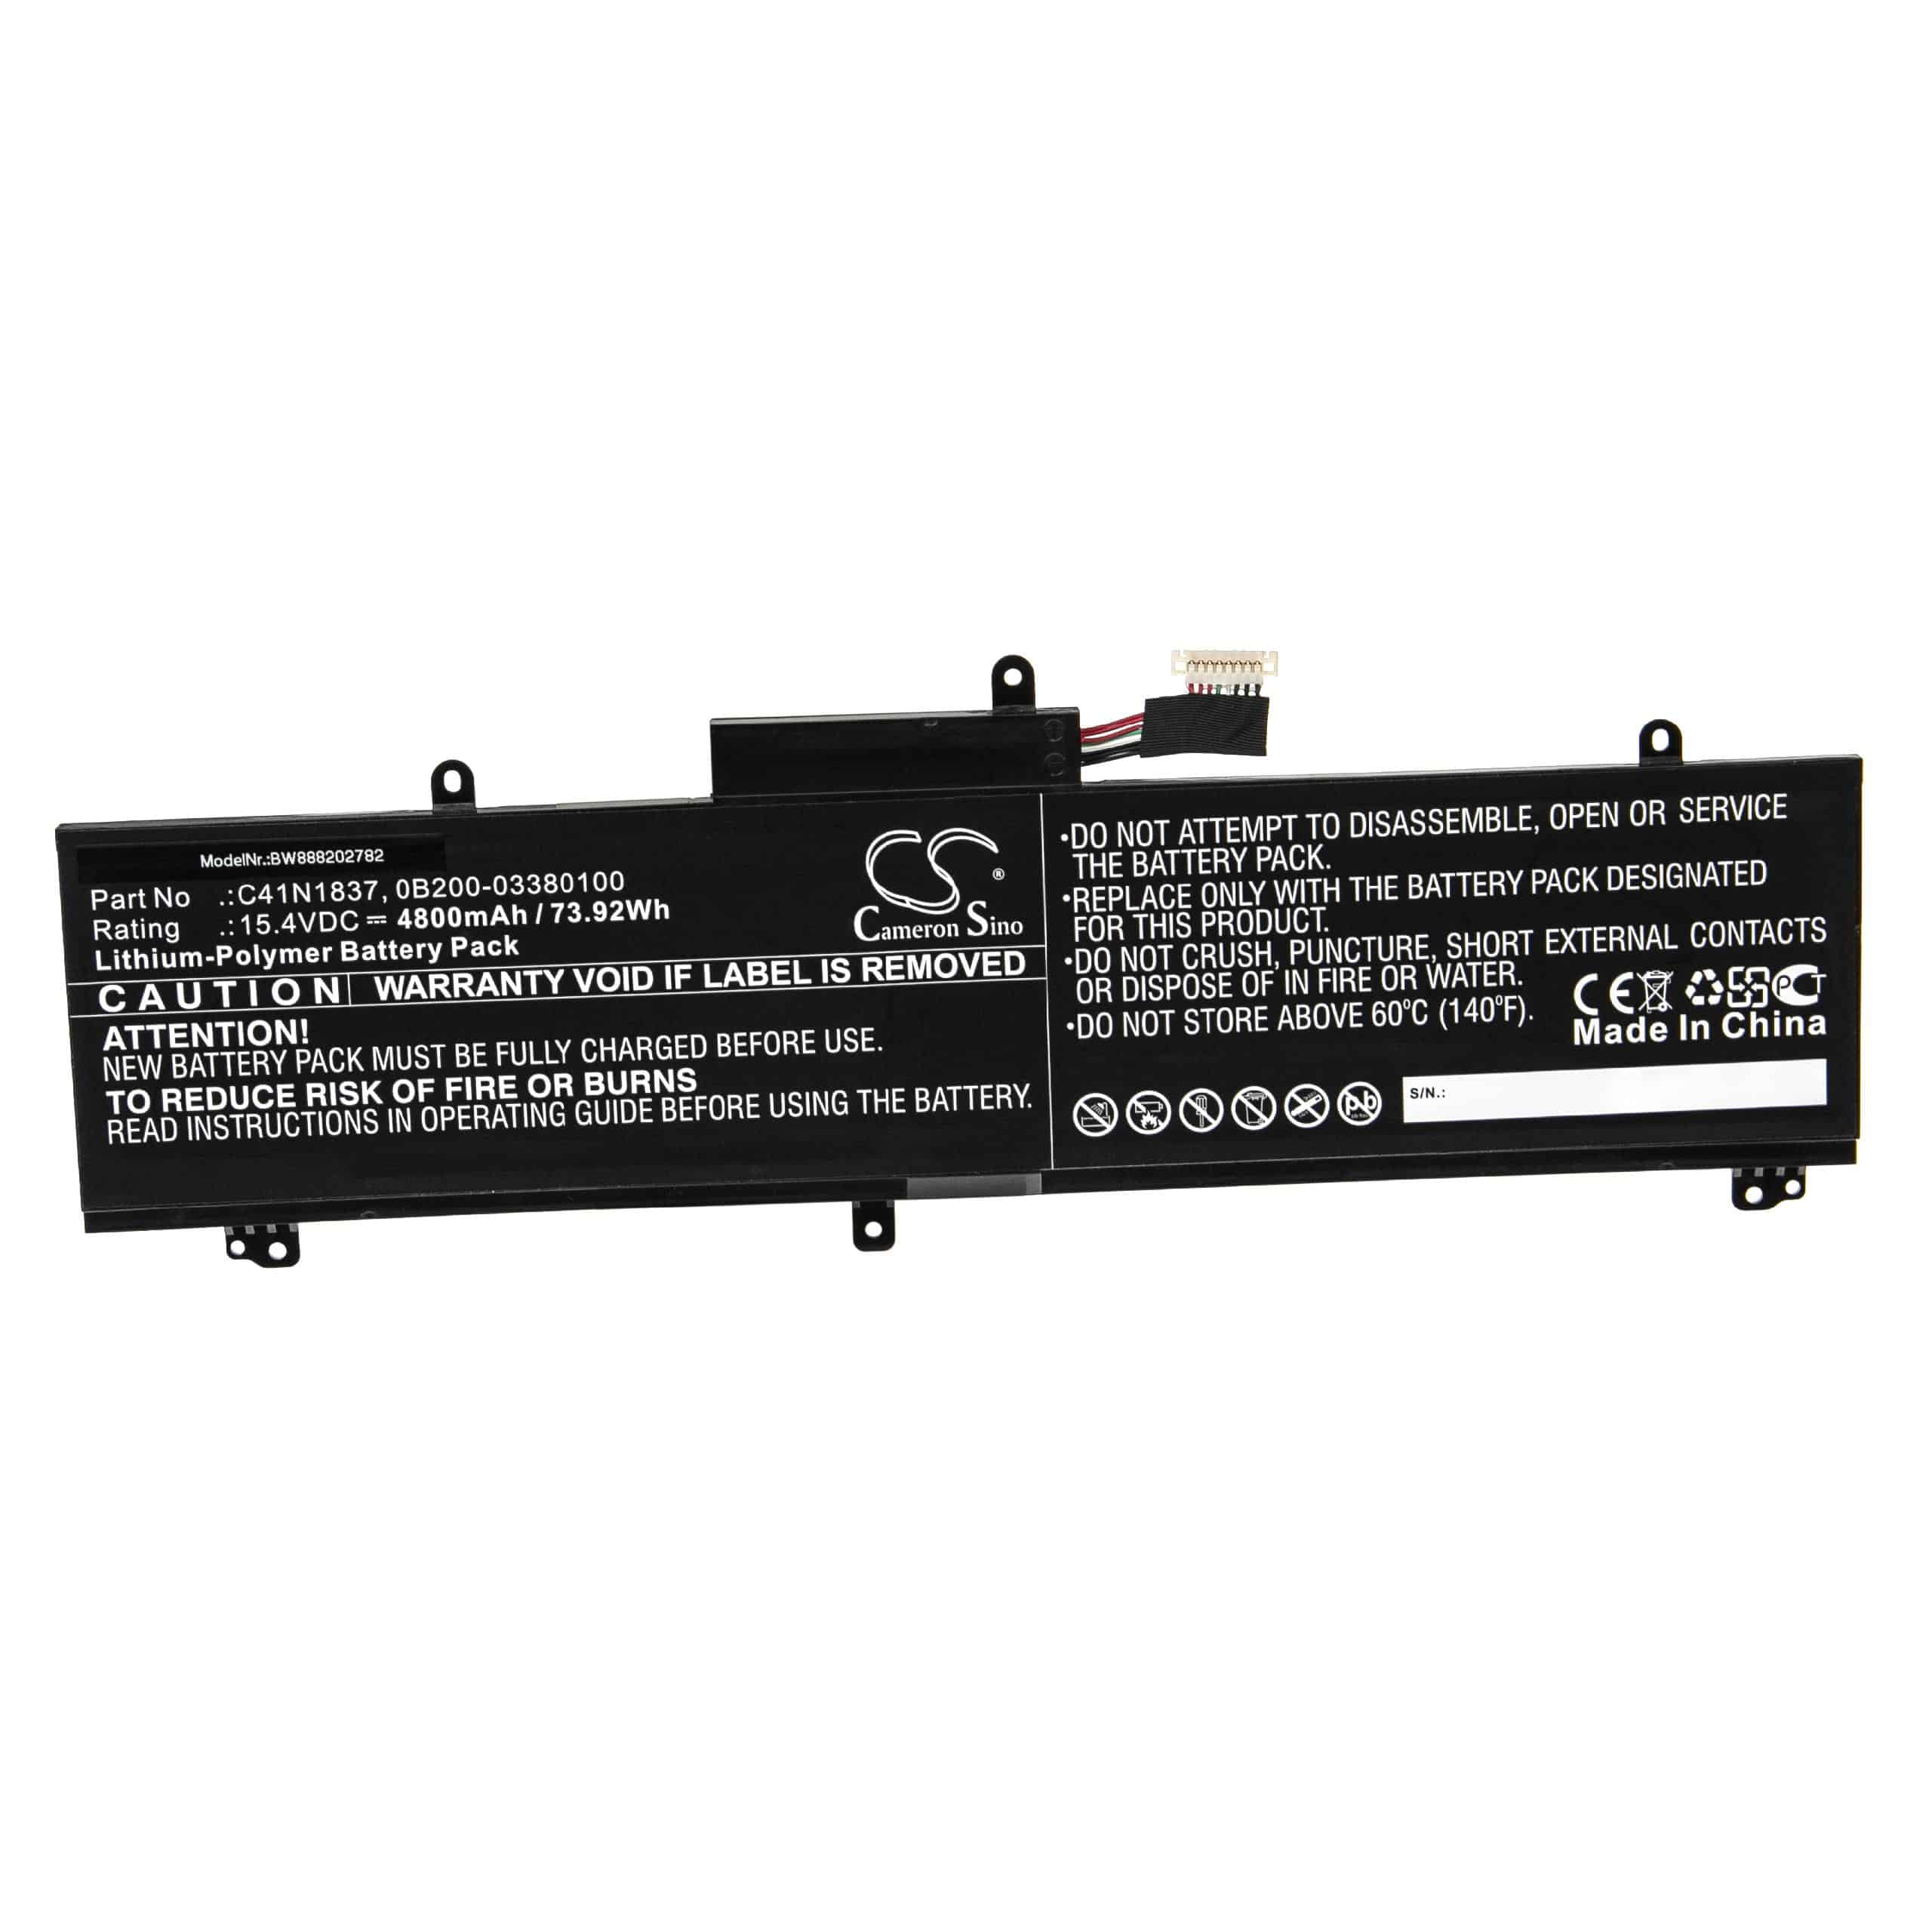 Batterie remplace Asus C41N1837, 0B200-03380100 pour ordinateur portable - 4800mAh 15,4V Li-polymère